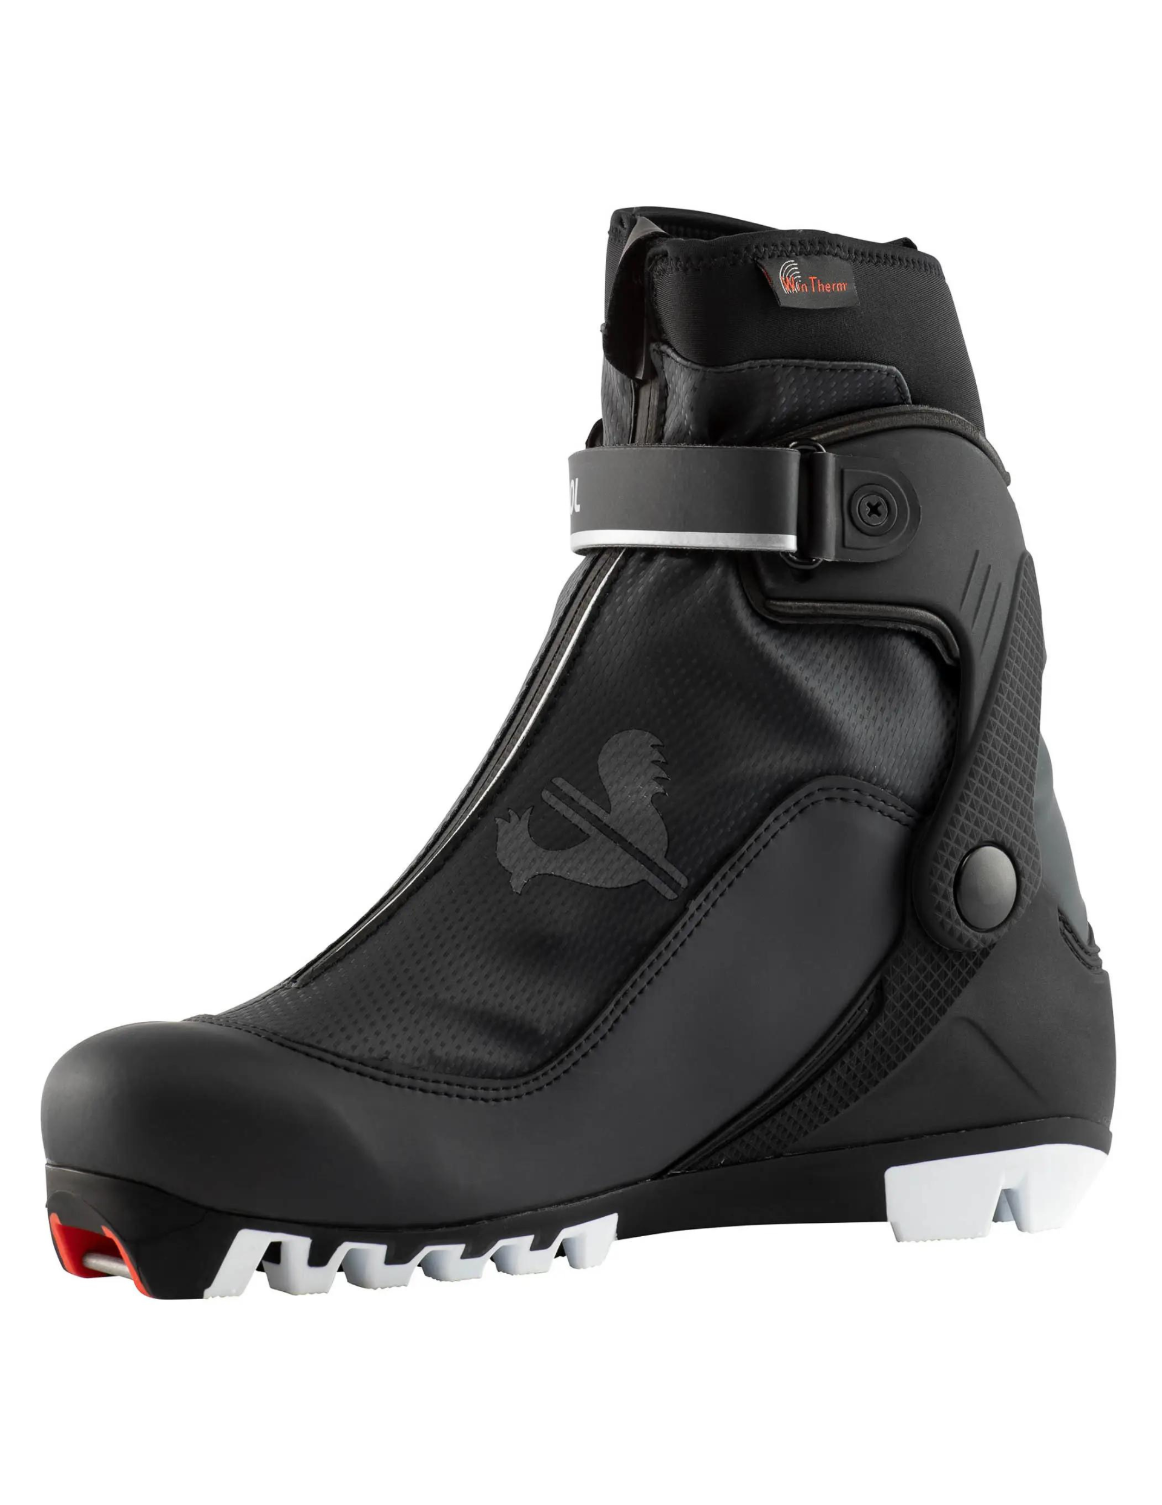 Chaussures de Ski de Fond Skating Rossignol X-8 Skate Femme